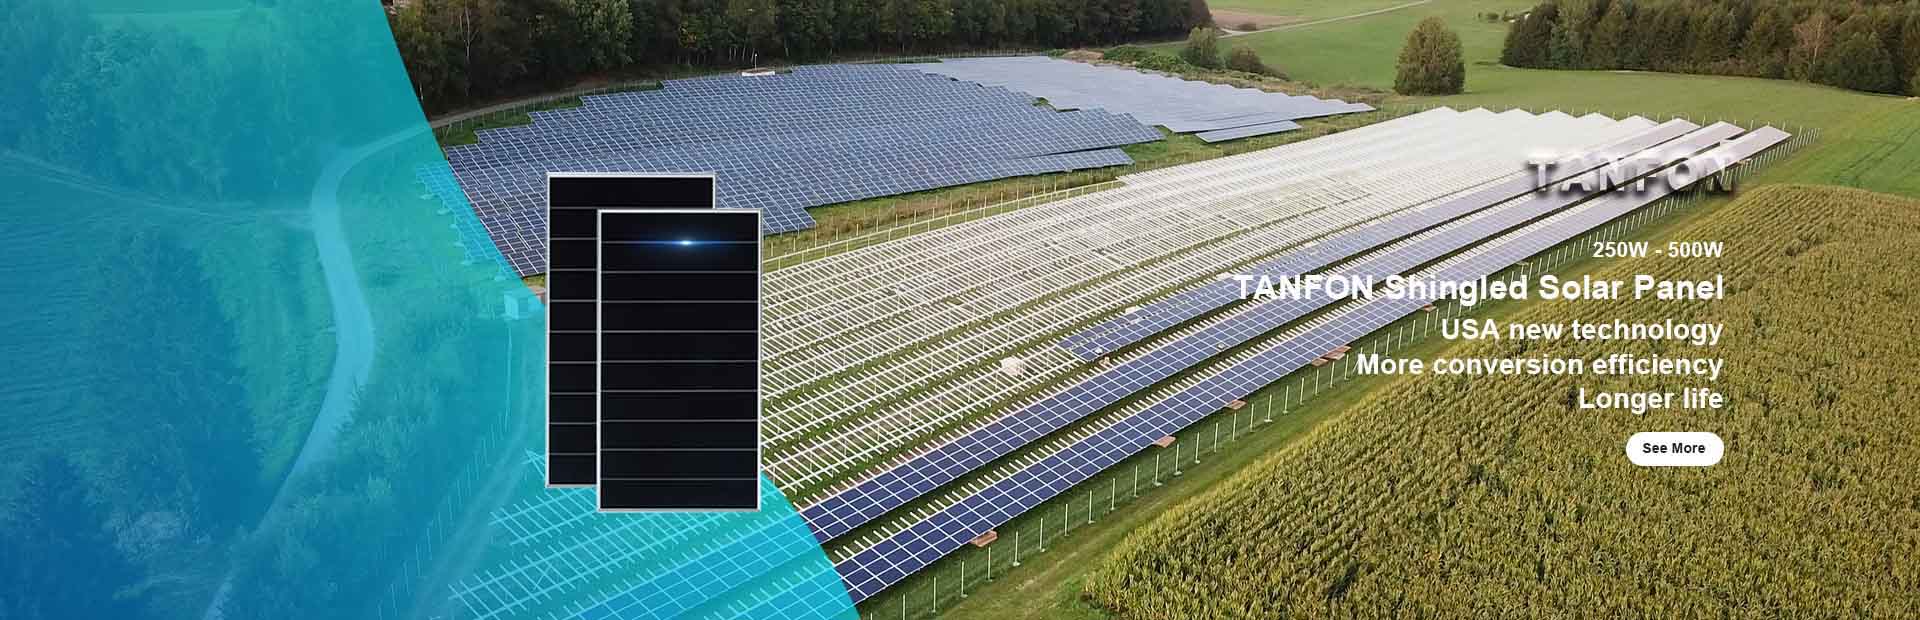 TANFON Shingled Solar Panel For Home